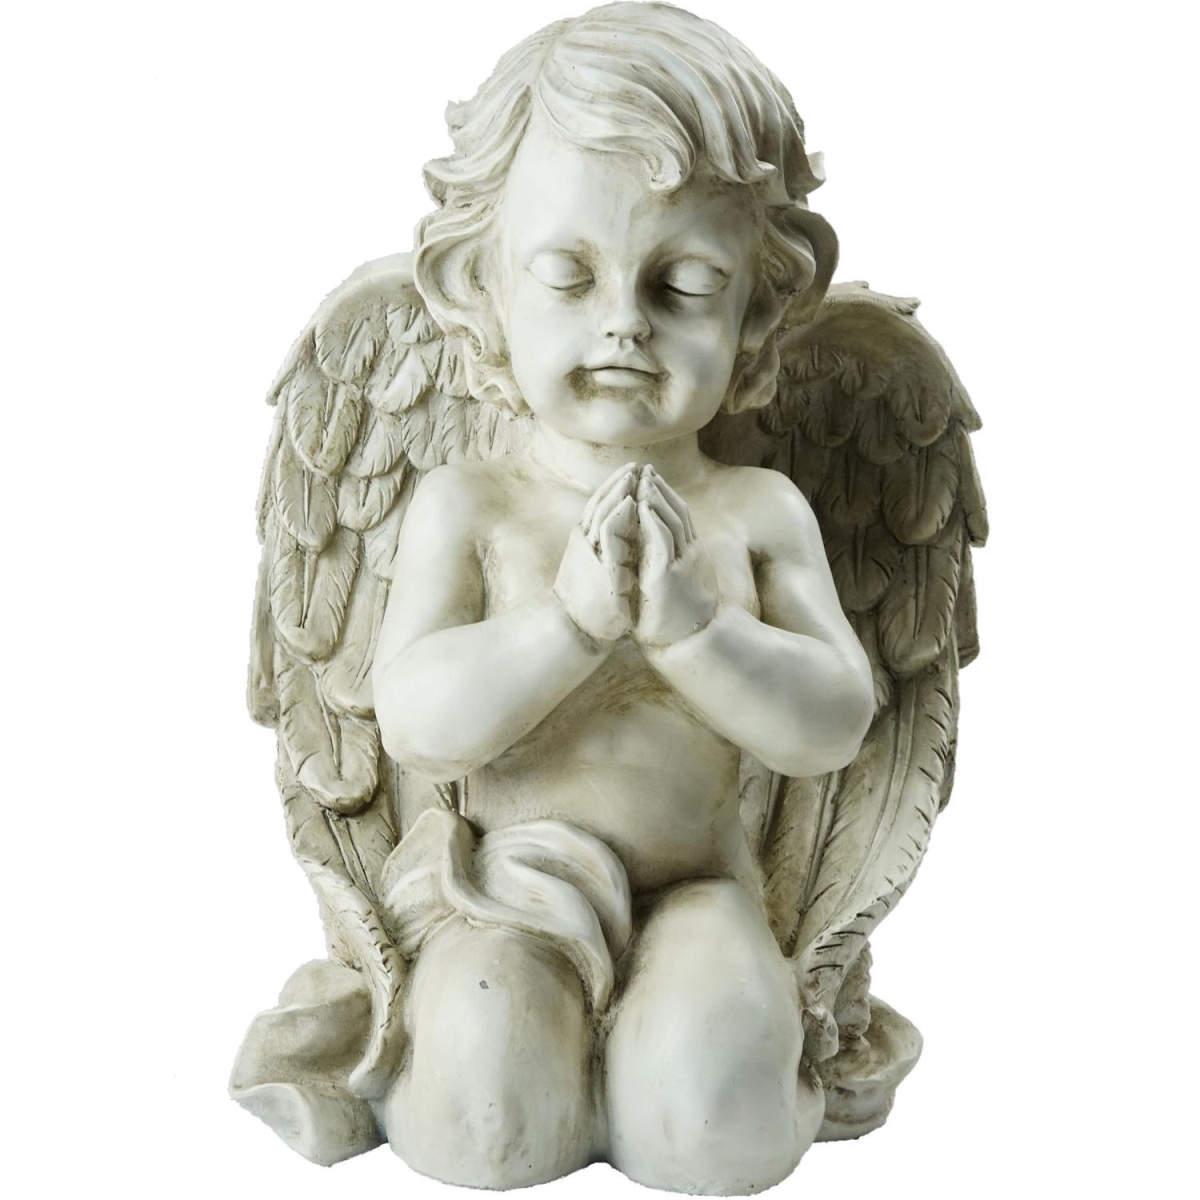 13.5 in. Kneeling Praying Cherub Angel Religious Outdoor Garden Statue -  Heat Wave, HE72793